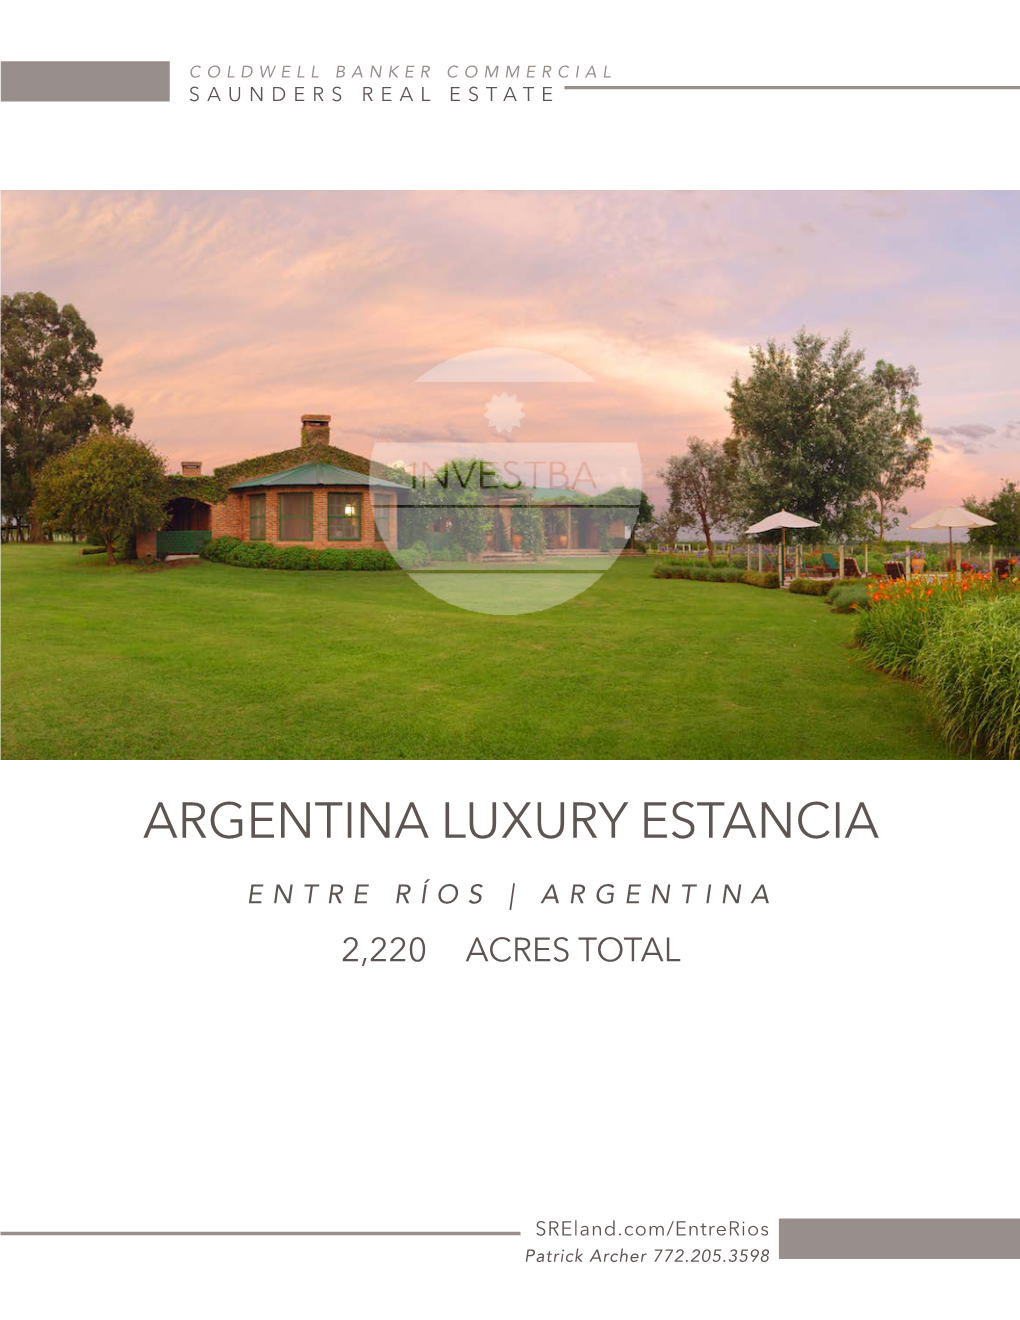 Argentina Luxury Estancia